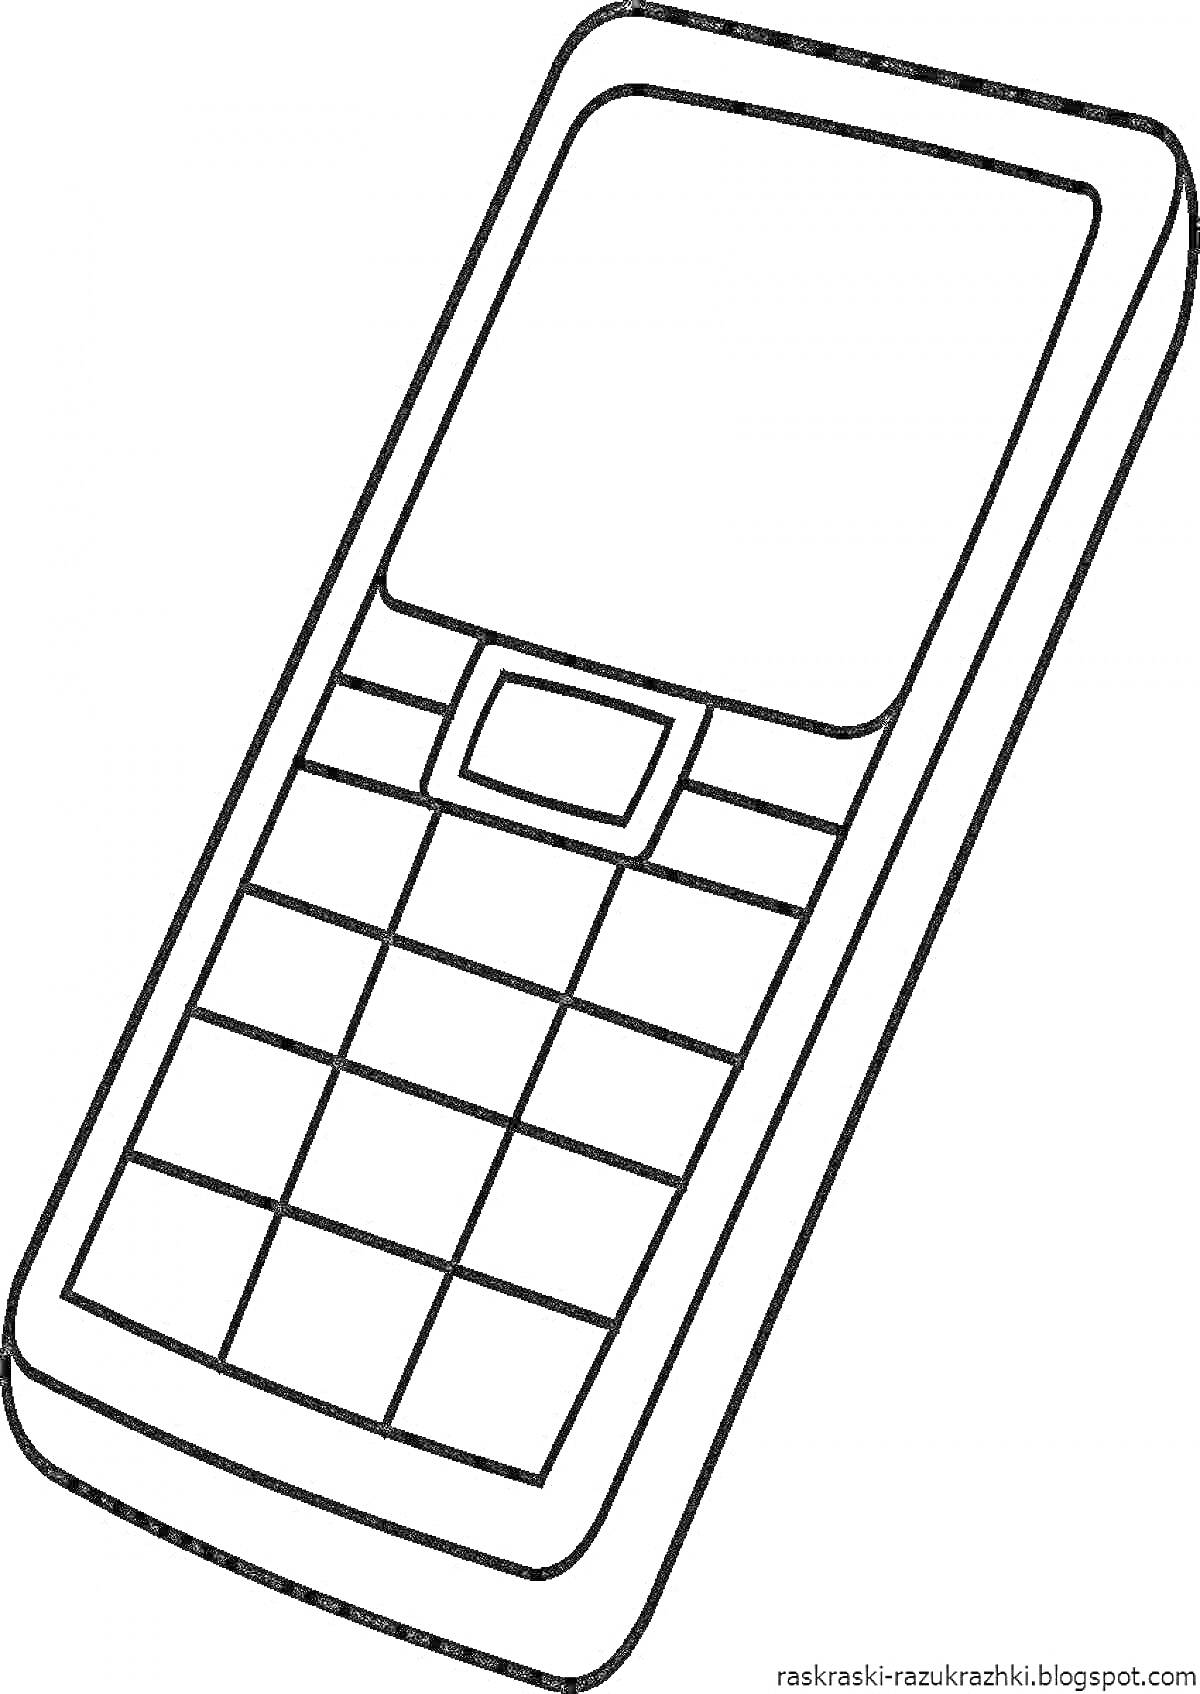 Мобильный телефон с экраном, кнопками и корпусом